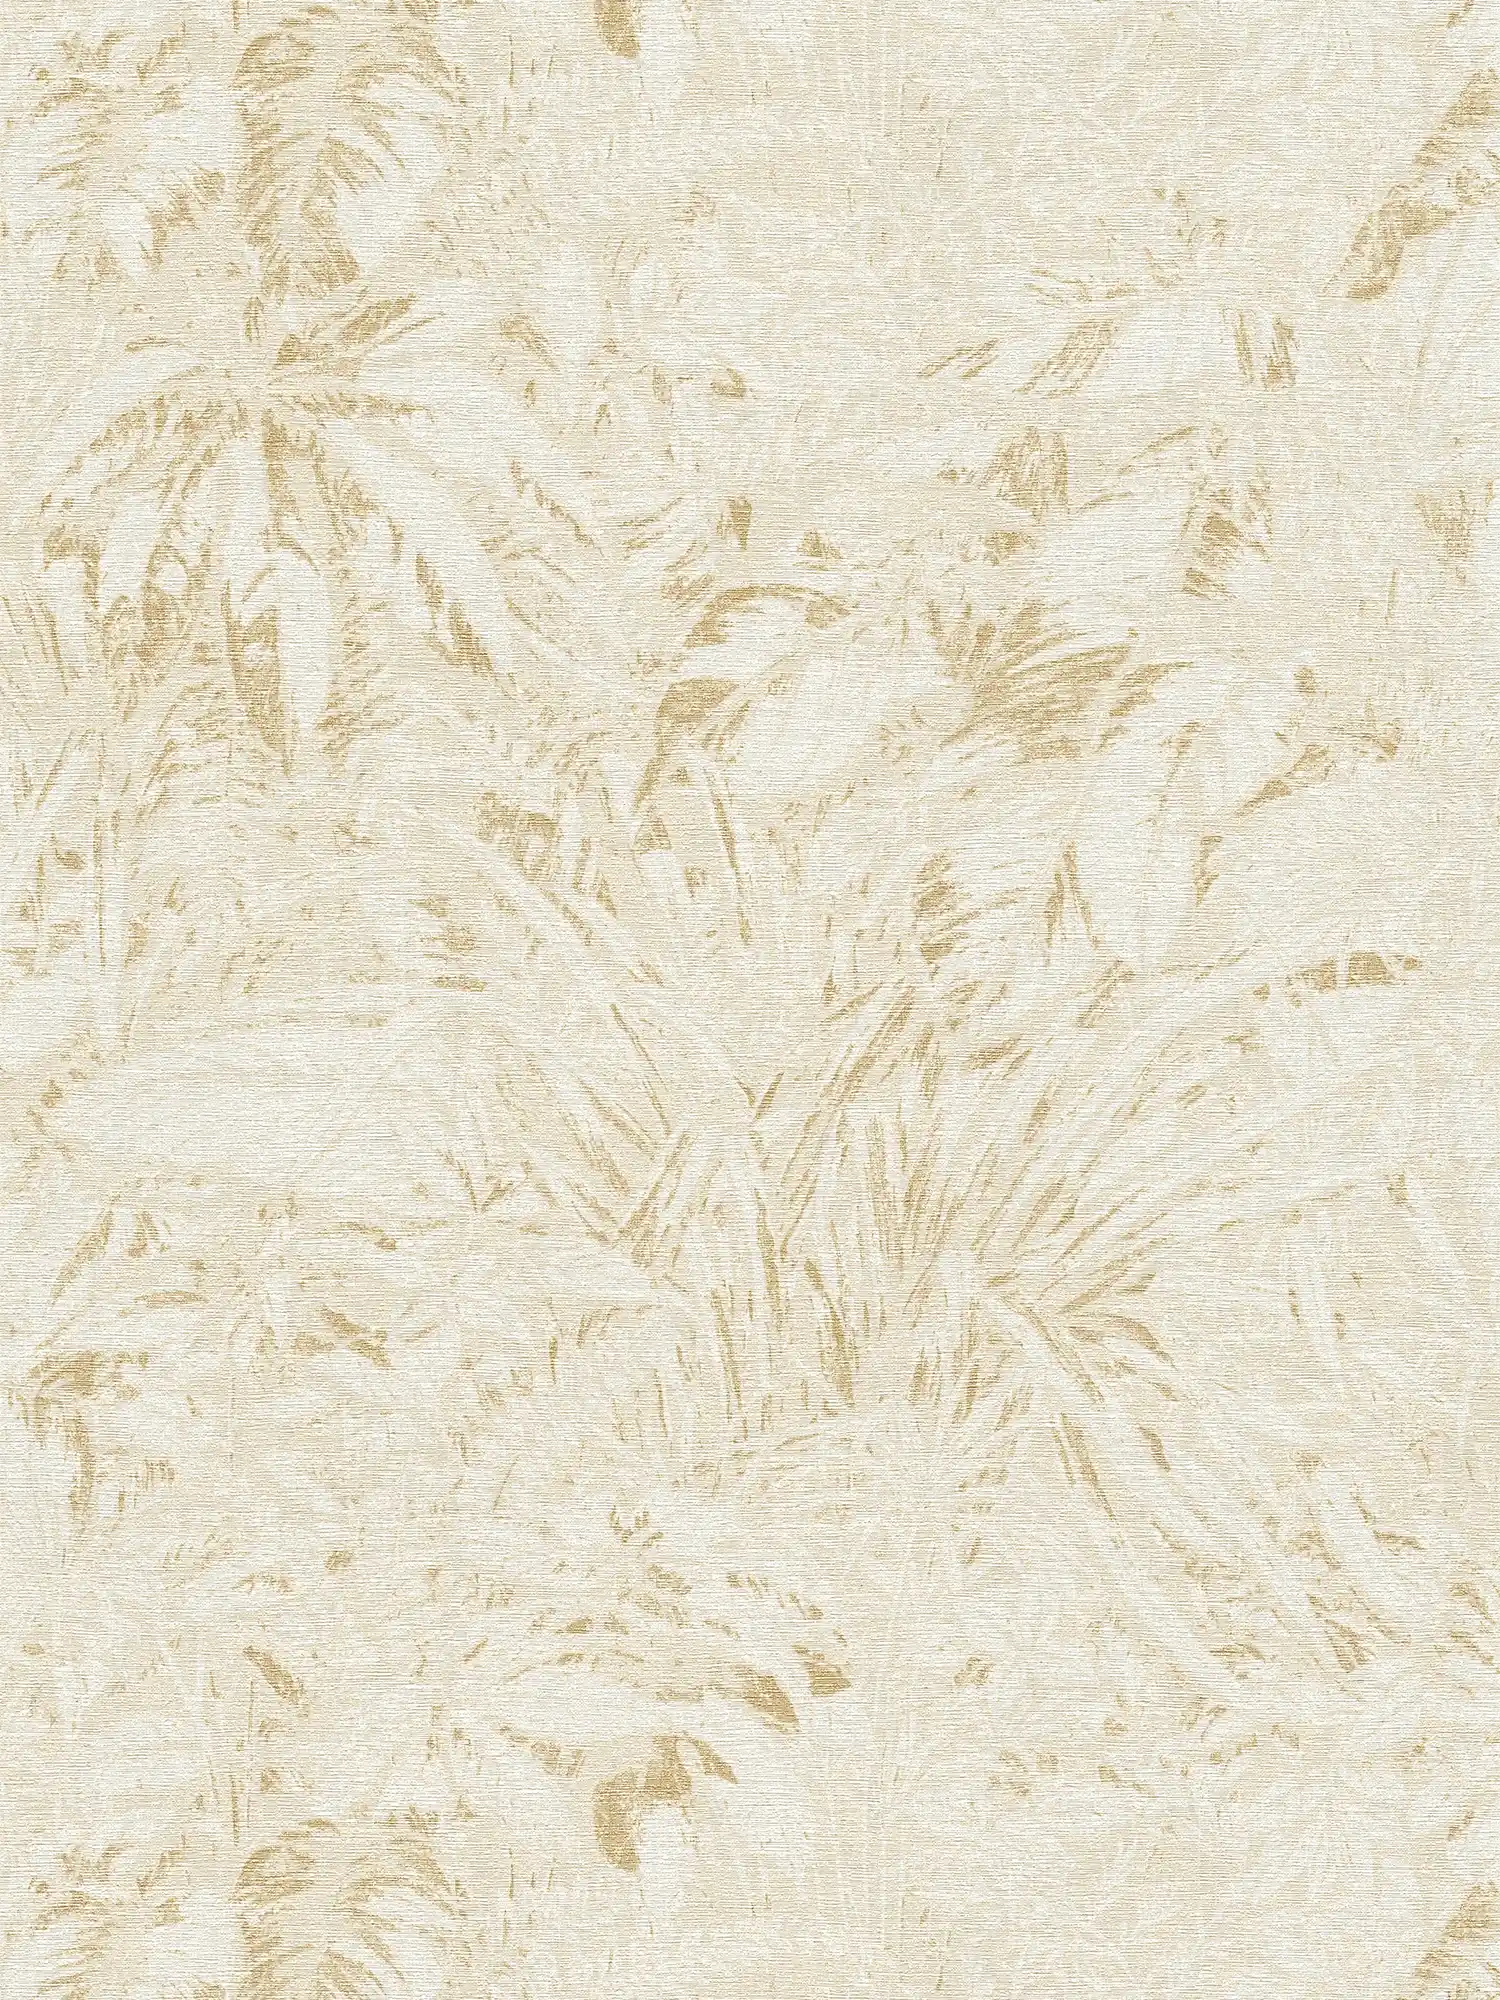 Jungle behang in zachte kleuren met bladmotief - beige, wit, goud
